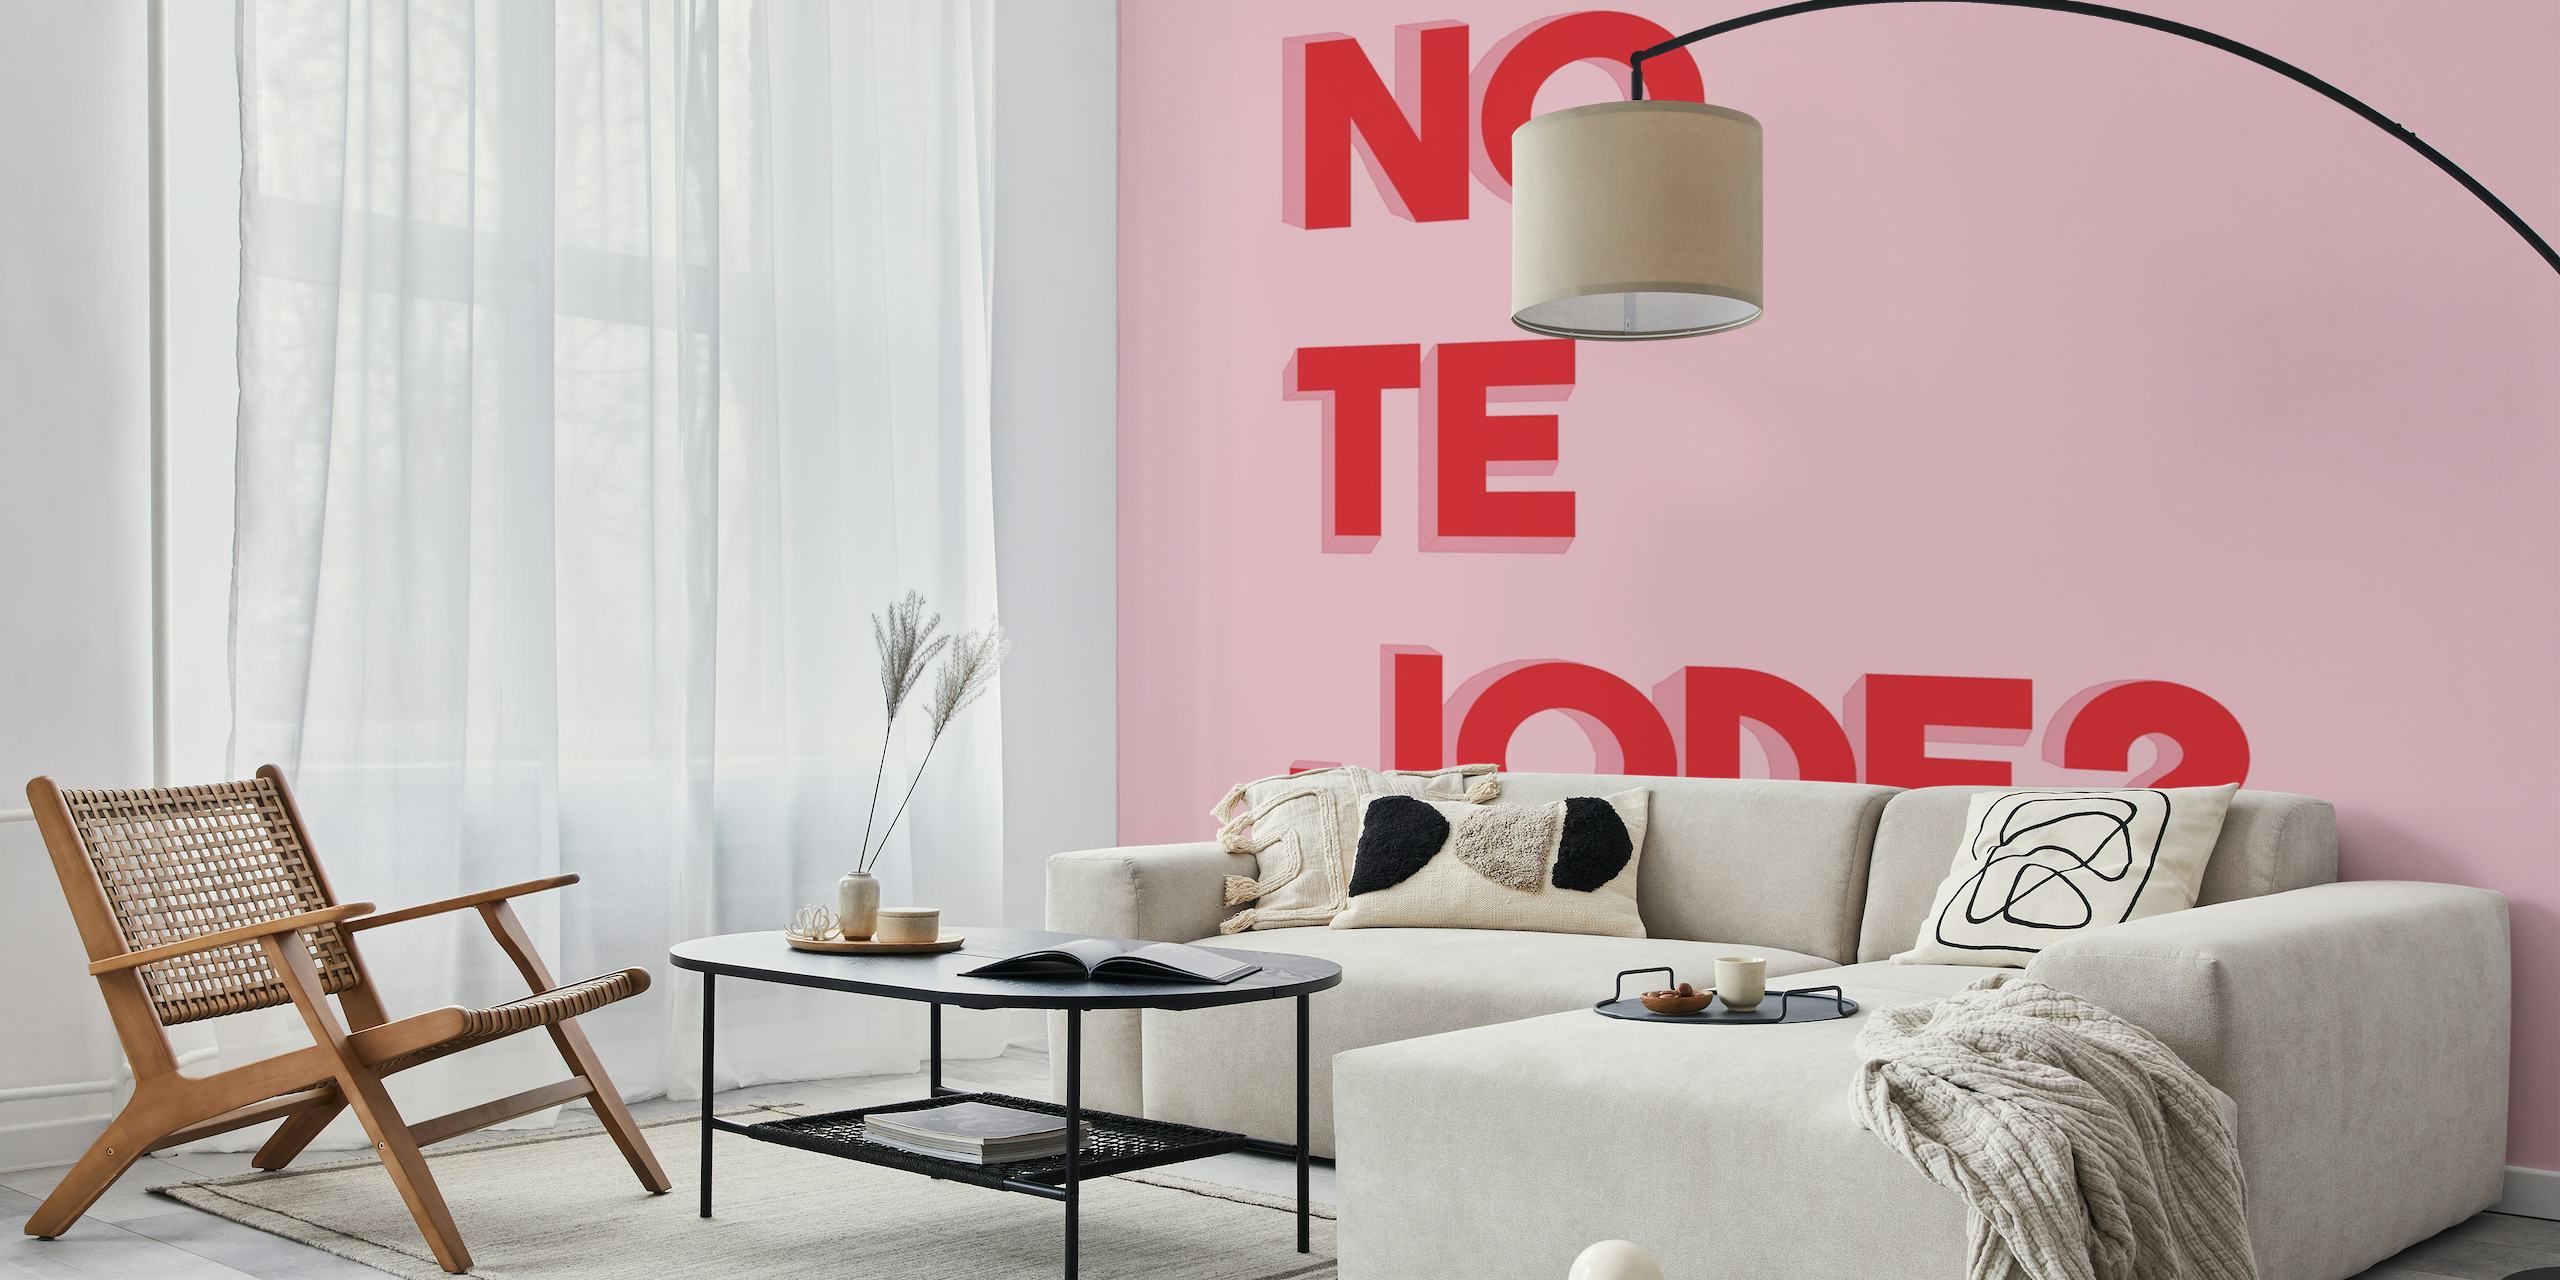 Vette rode tekst 'No te jode?' op een roze achtergrondmuurschildering